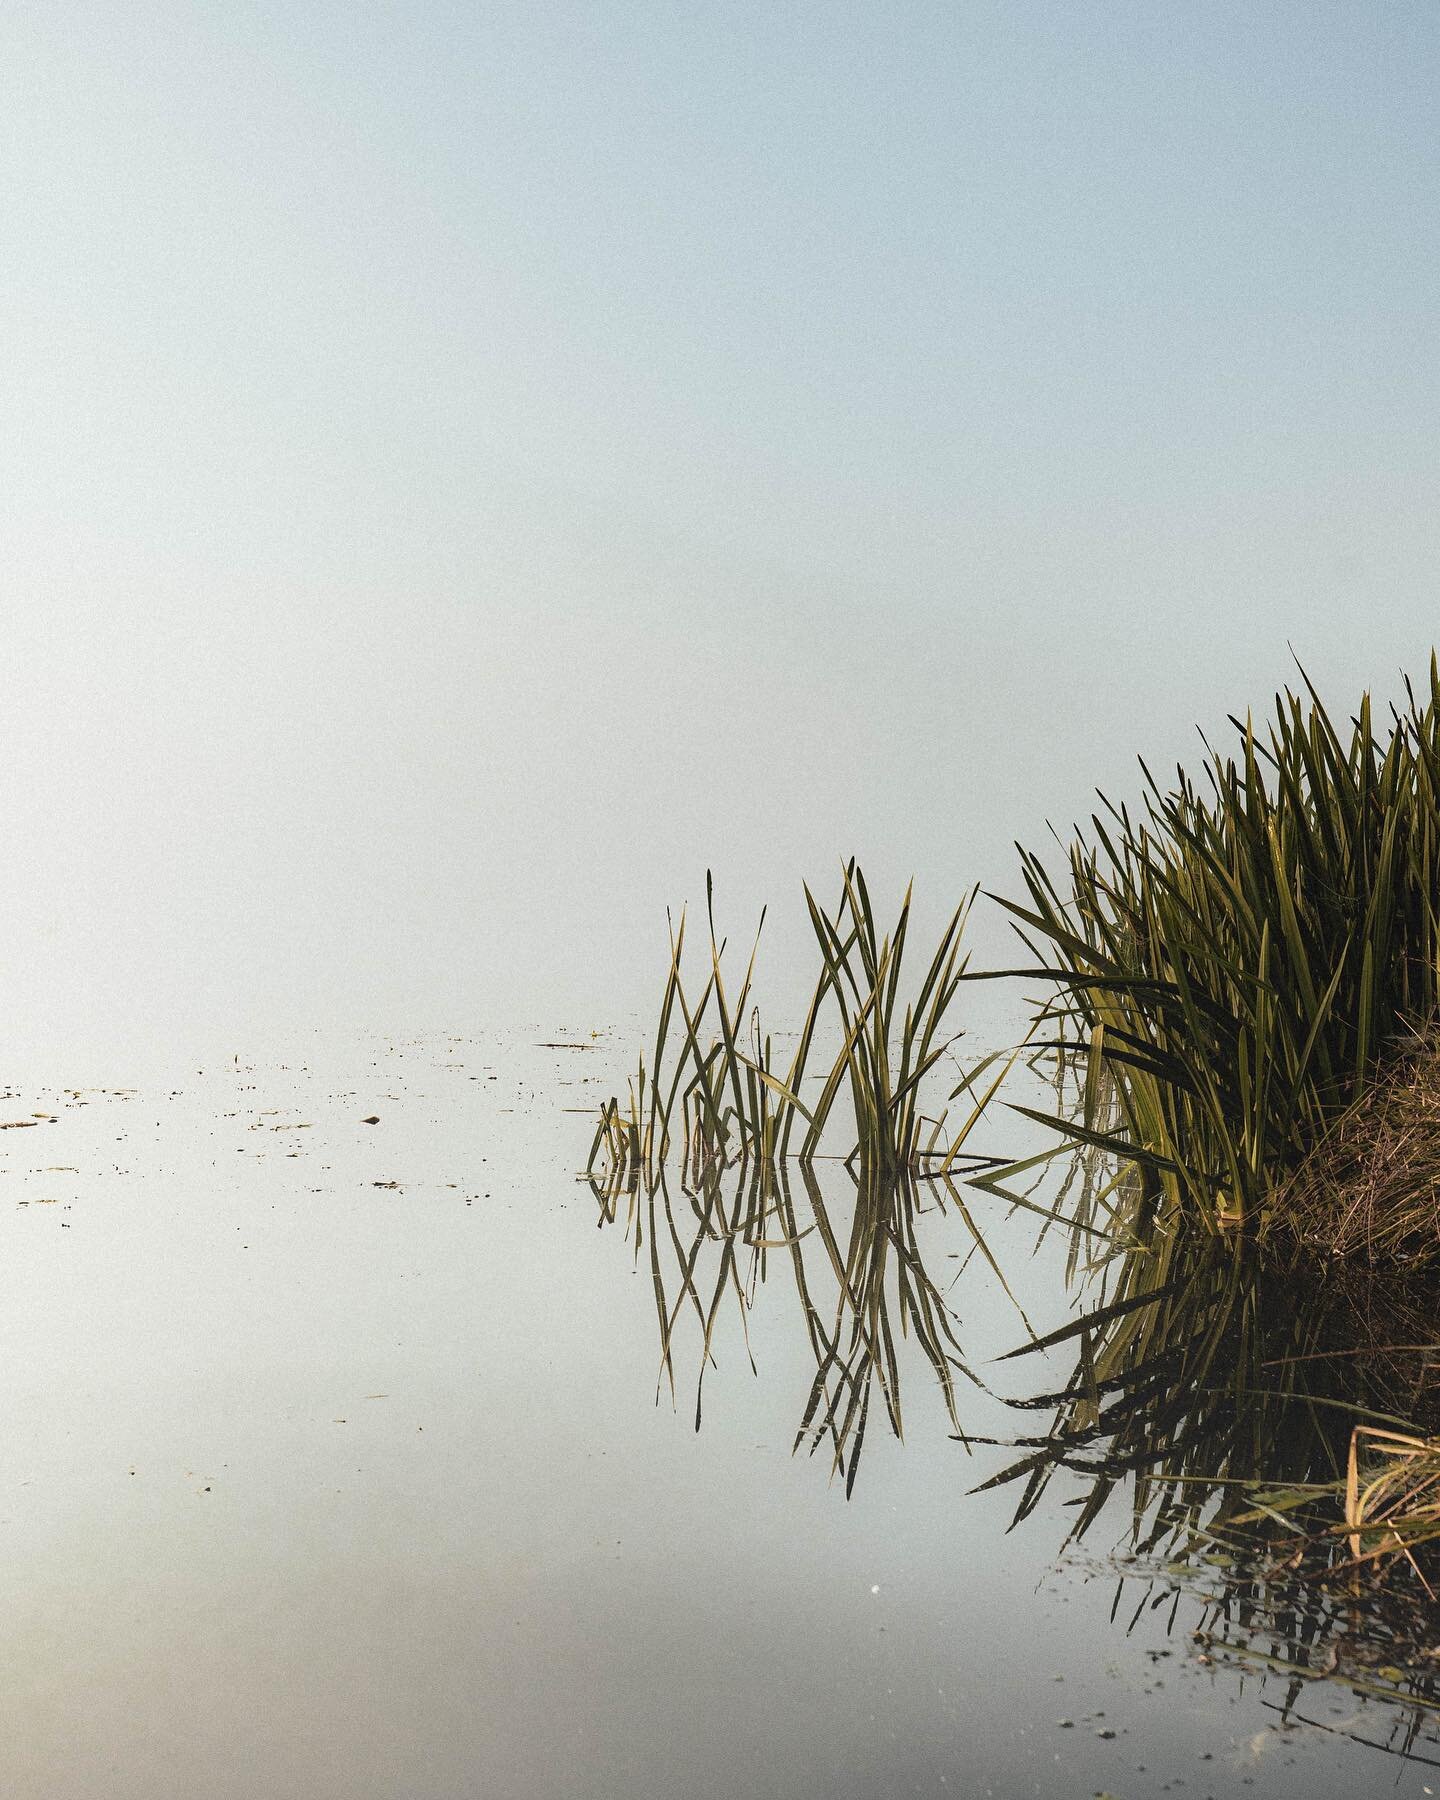 The minimalist life of reeds&hellip;🤔

#minimalist #naturephotography #folkscenery #landscape_perfection #mustgetoutdoors #silence #fog #photooftheday #ourplanetdaily #exploremore #wondermore #globeshotz #wanderlust #picoftheday #igholland #frysl&ac